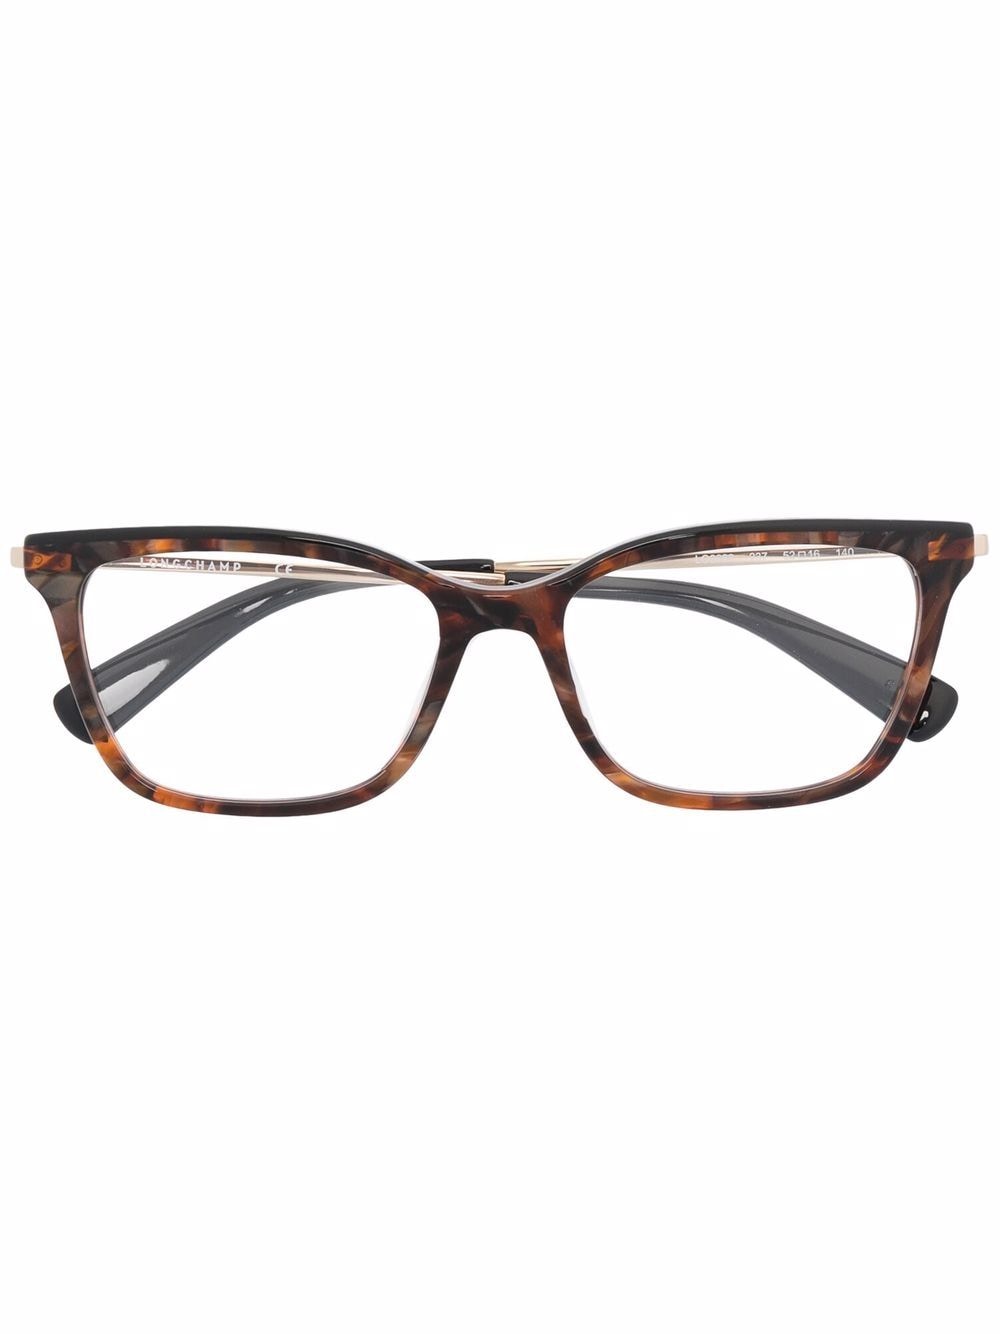 фото Longchamp очки в прямоугольной оправе черепаховой расцветки